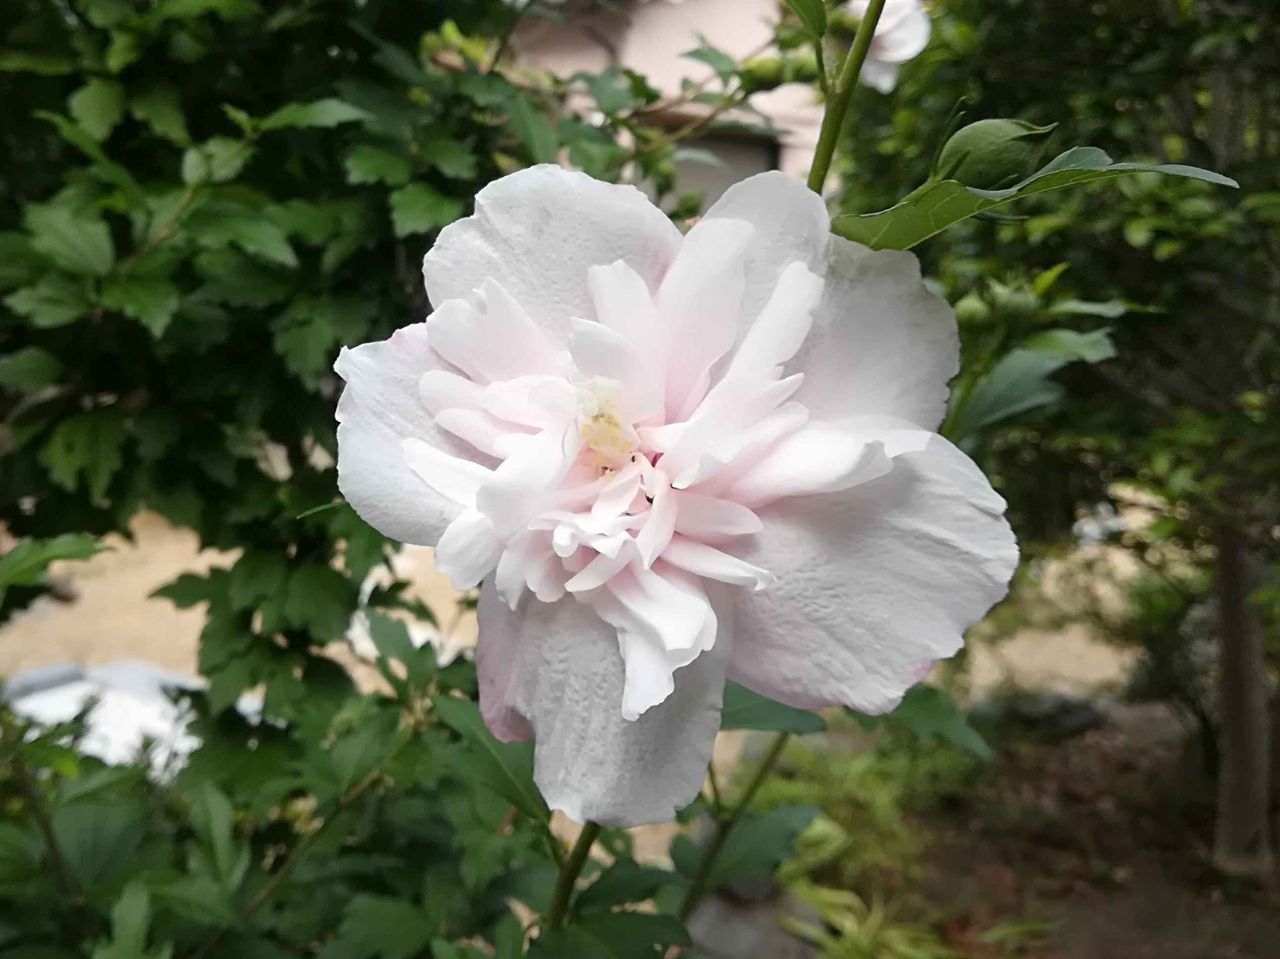 高槻の街かどで見かけるこの夏の花は何 幹が直立で白い花が特徴 19年7月 高槻network新聞